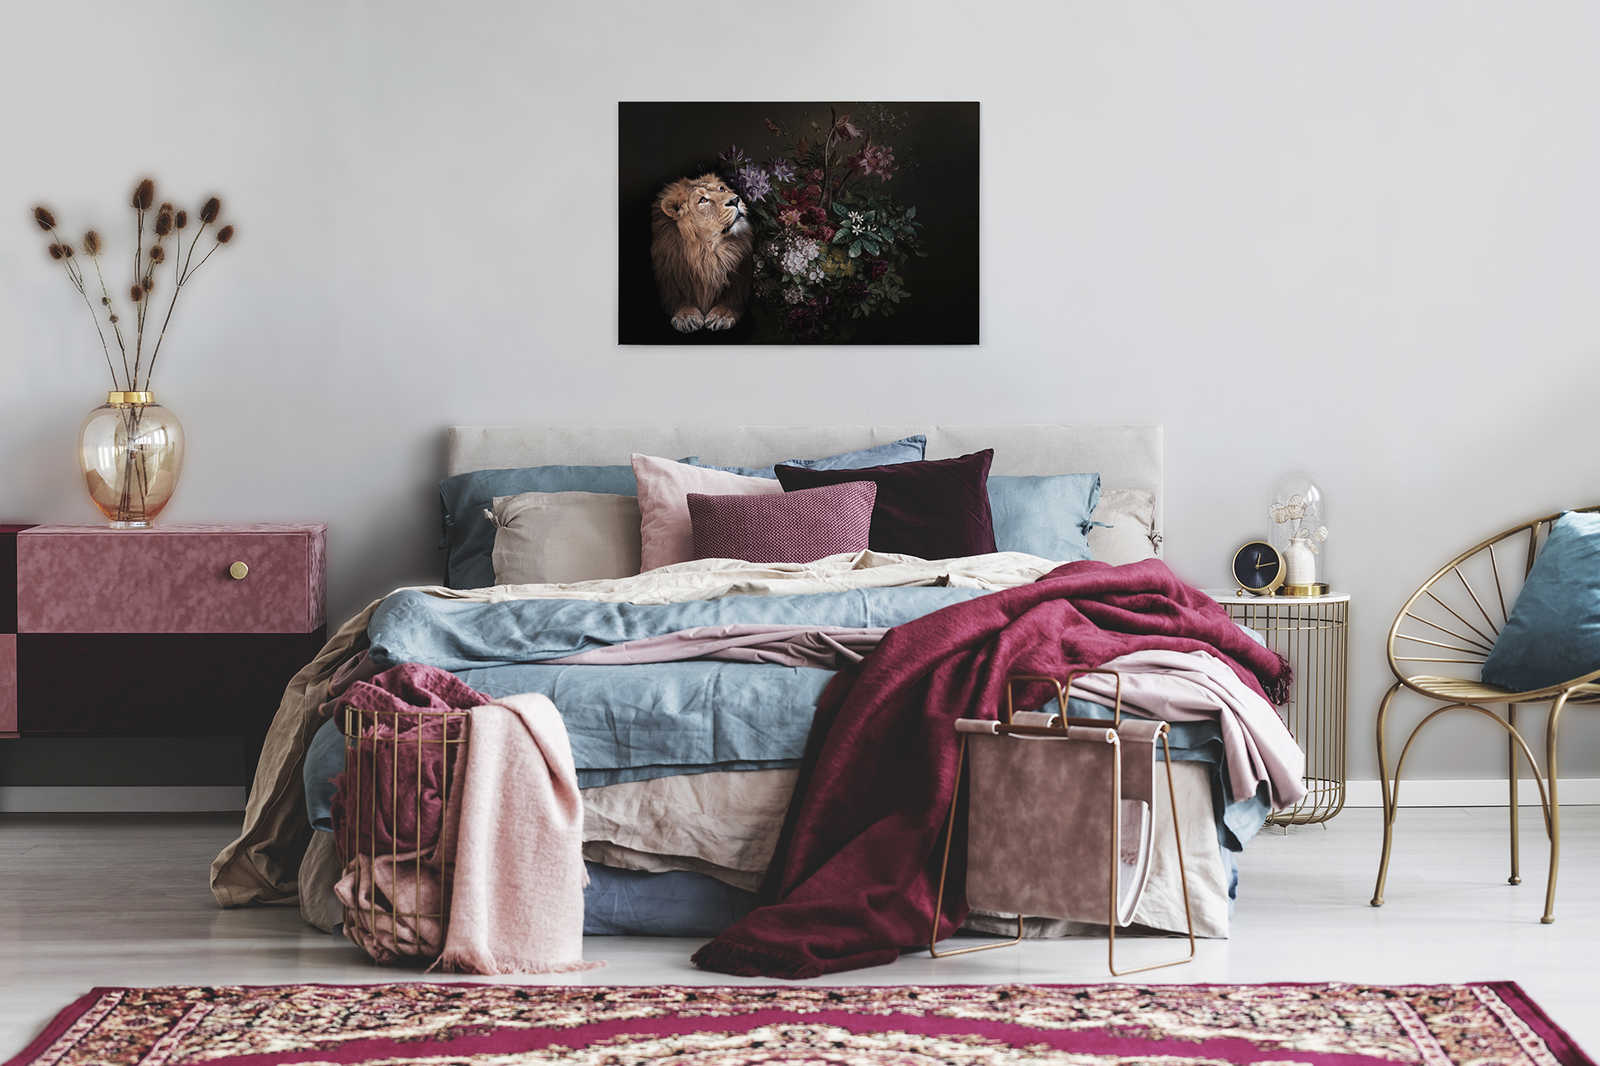             Leinwandbild Löwe Portrait mit Blumen – 0,90 m x 0,60 m
        